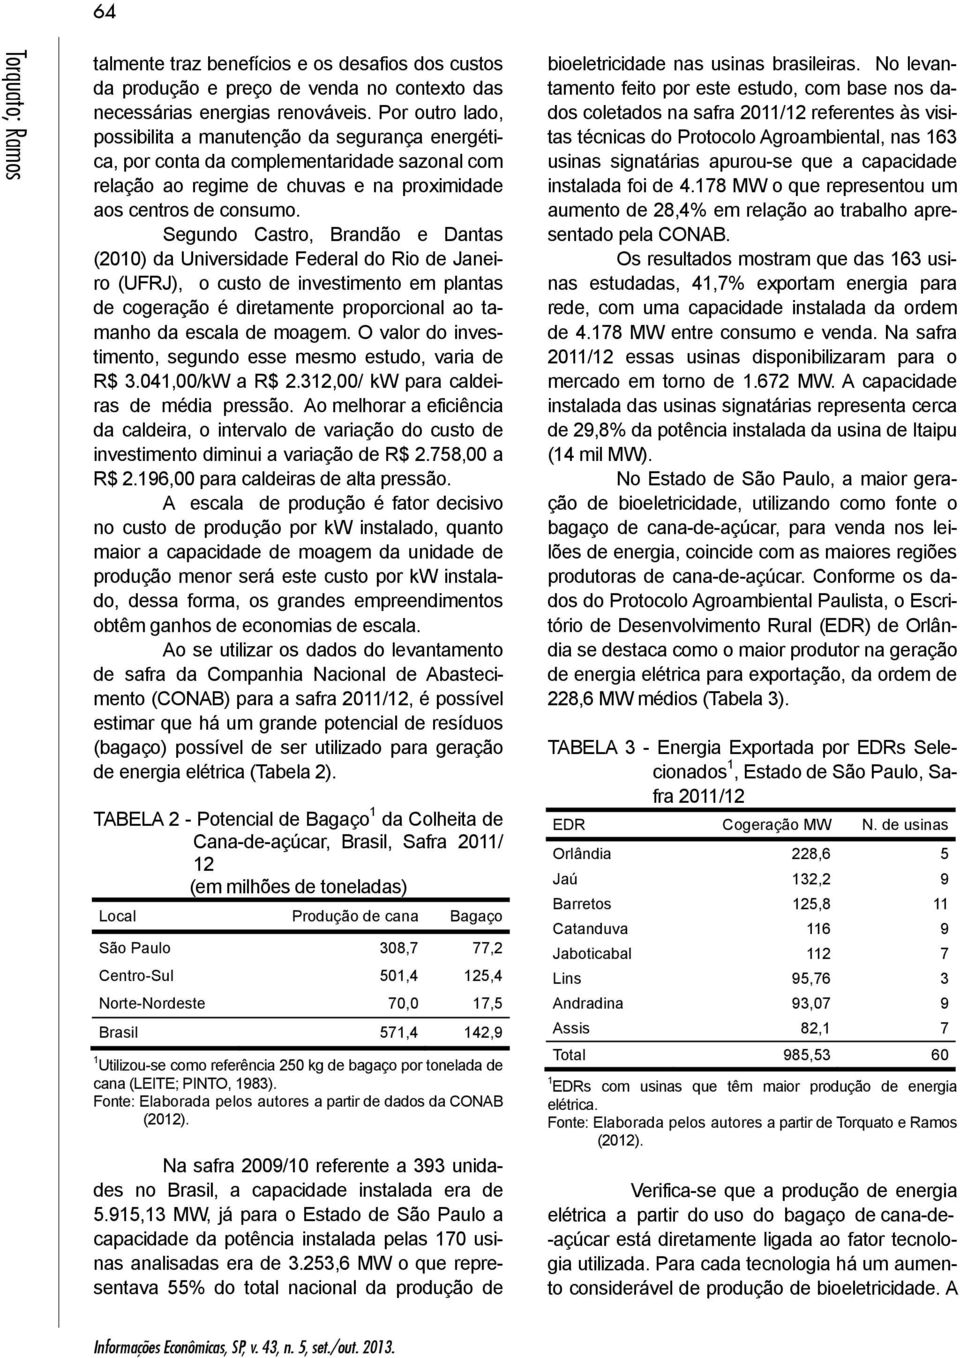 Segundo Castro, Brandão e Dantas (2010) da Universidade Federal do Rio de Janeiro (UFRJ), o custo de investimento em plantas de cogeração é diretamente proporcional ao tamanho da escala de moagem.